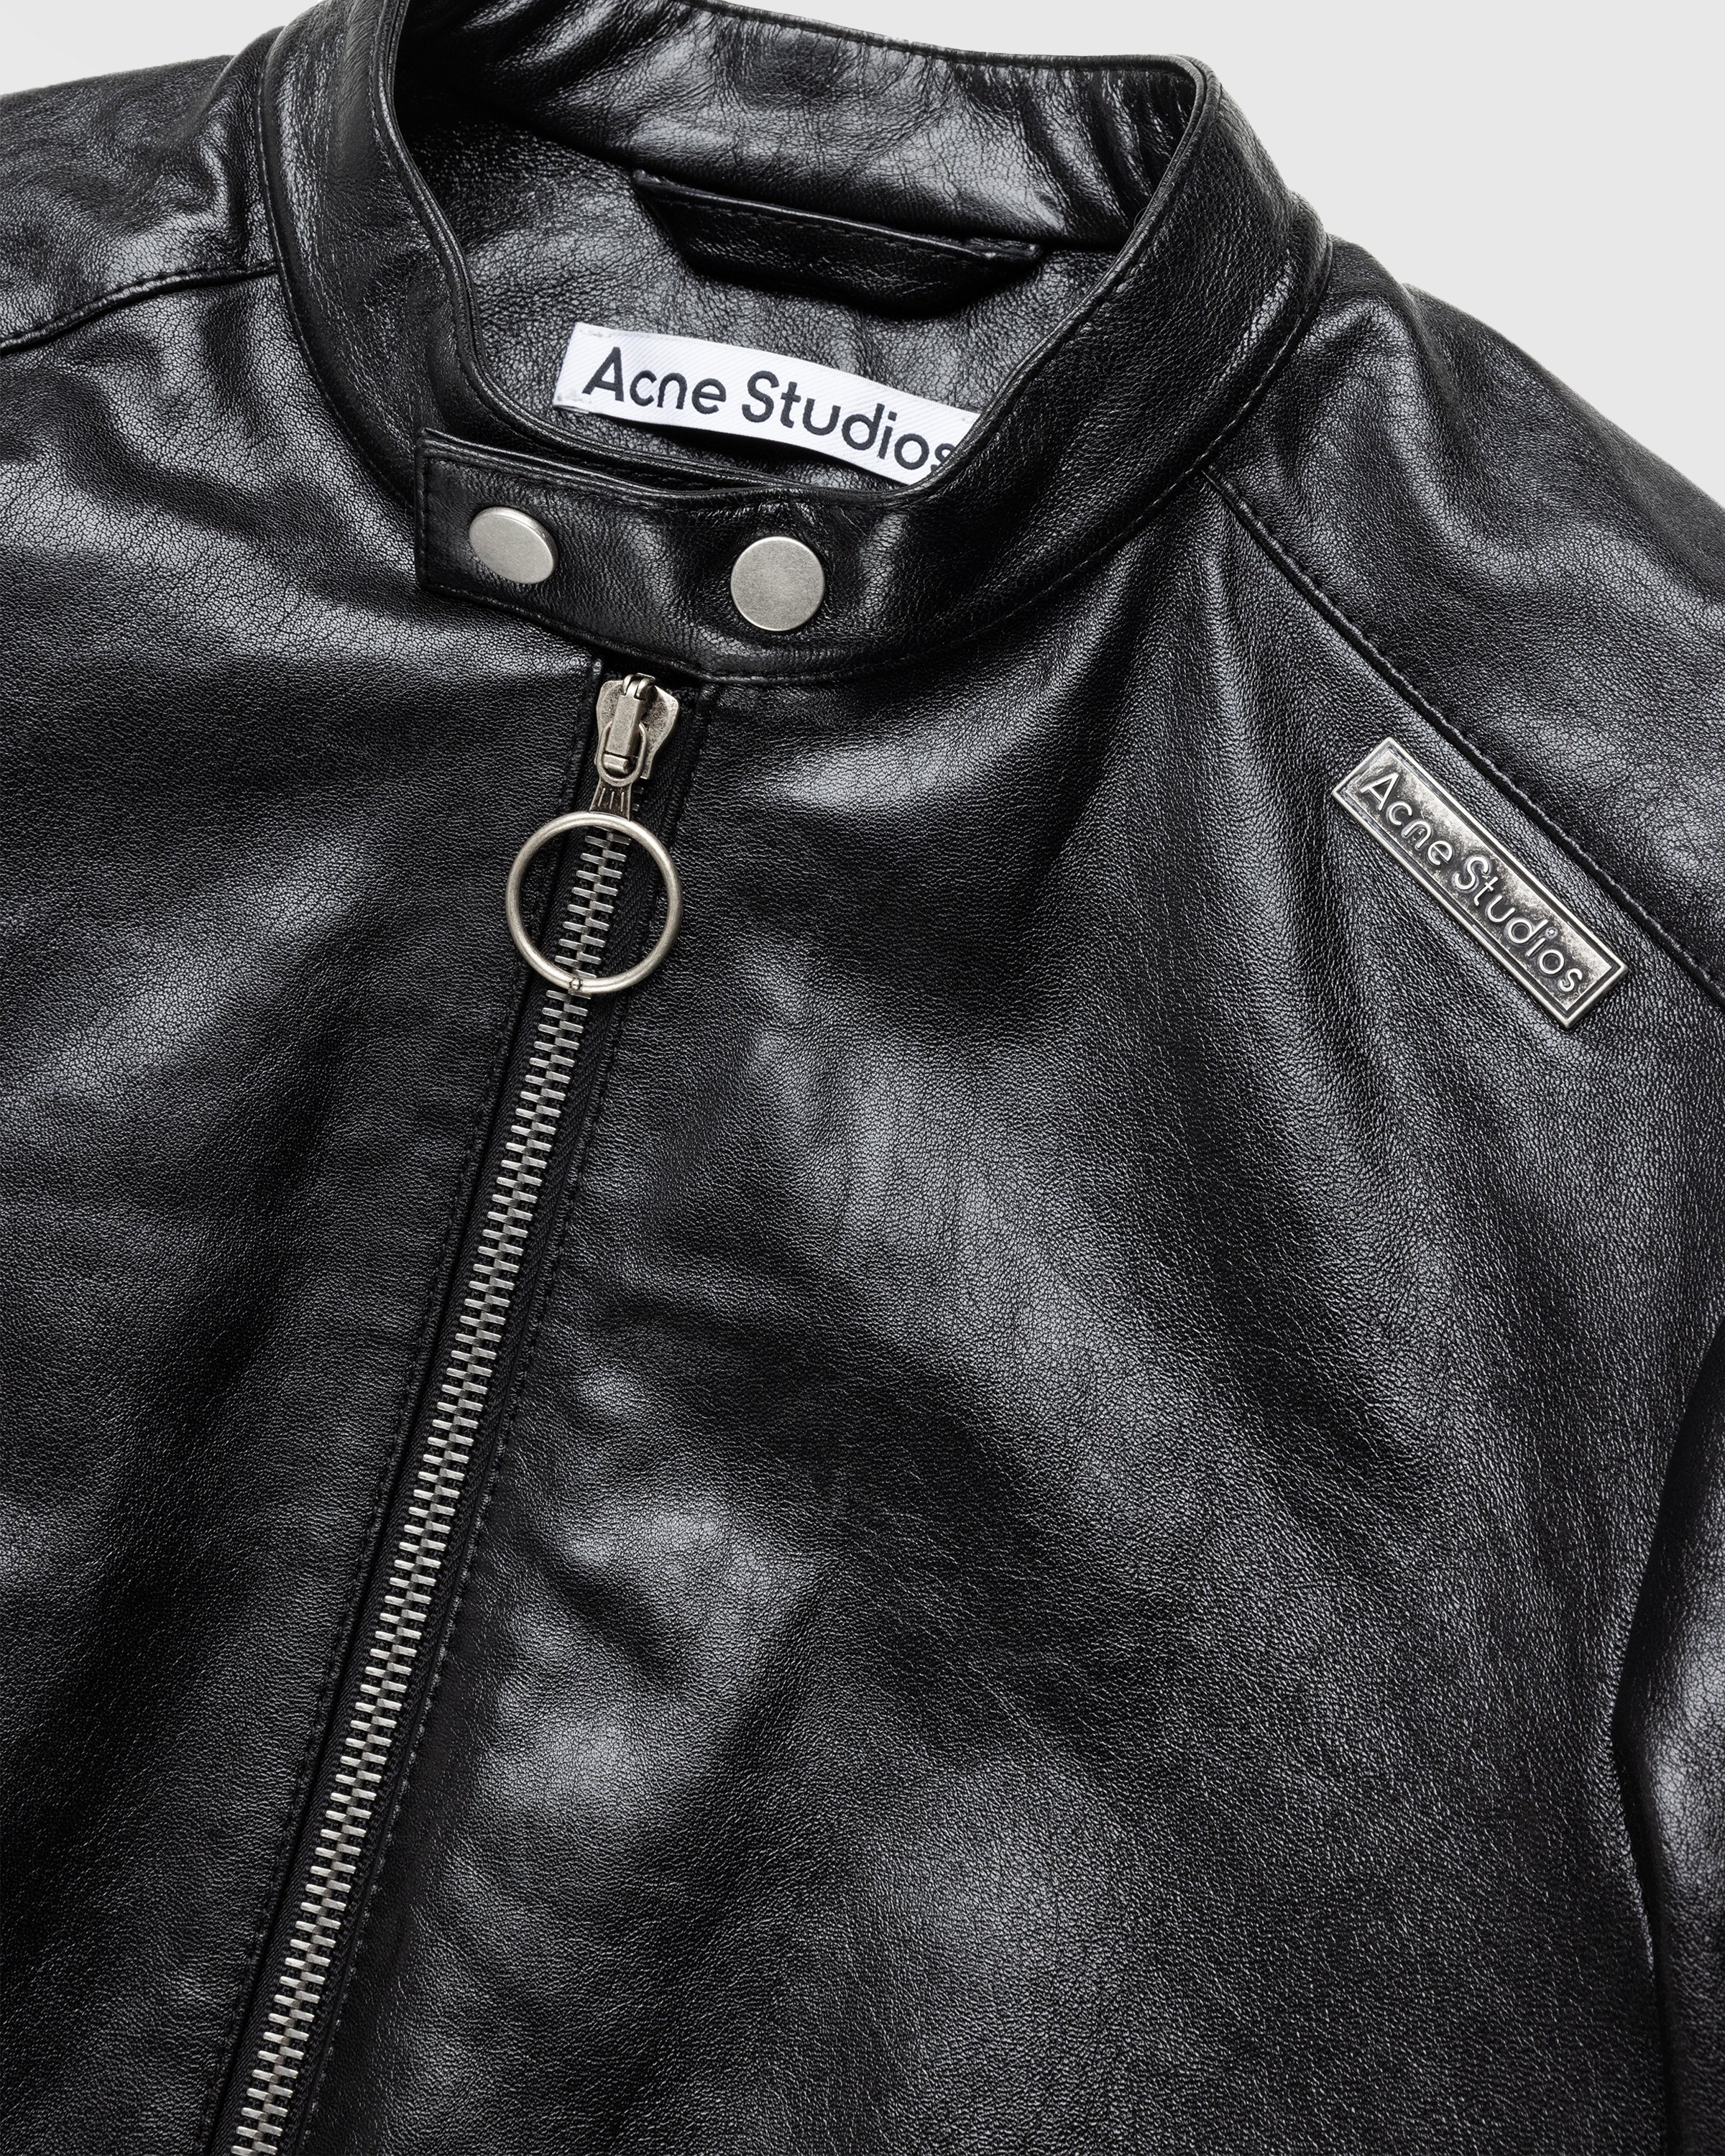 Acne Studios - Leather Jacket Black - Clothing - Black - Image 6